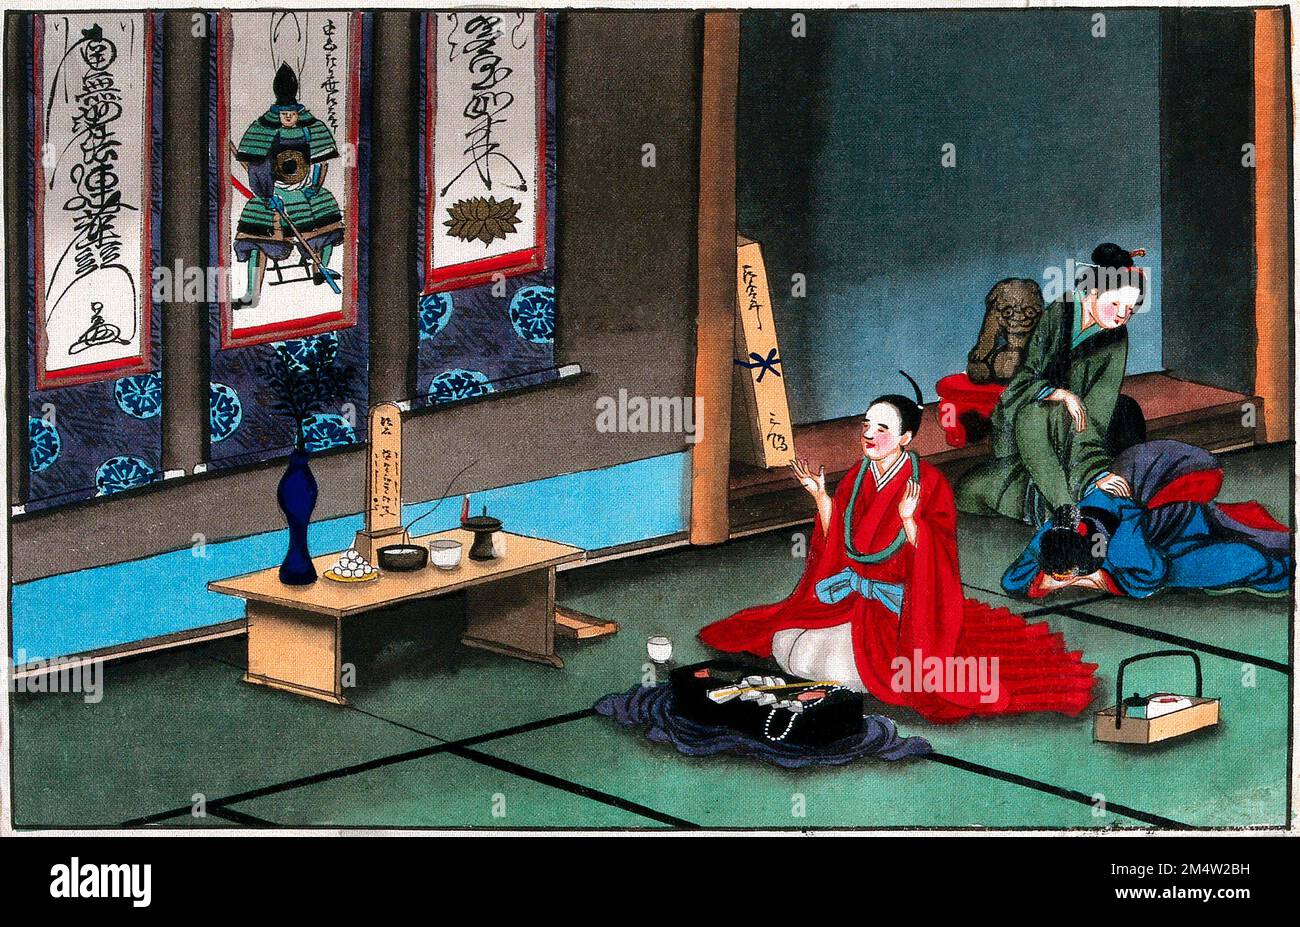 Costumi funebri giapponesi: Un capo sacerdote buddista inginocchiato e di colore rosso canta davanti all'immagine di un antenato di famiglia. Acquerello, ca. 1880 Foto Stock